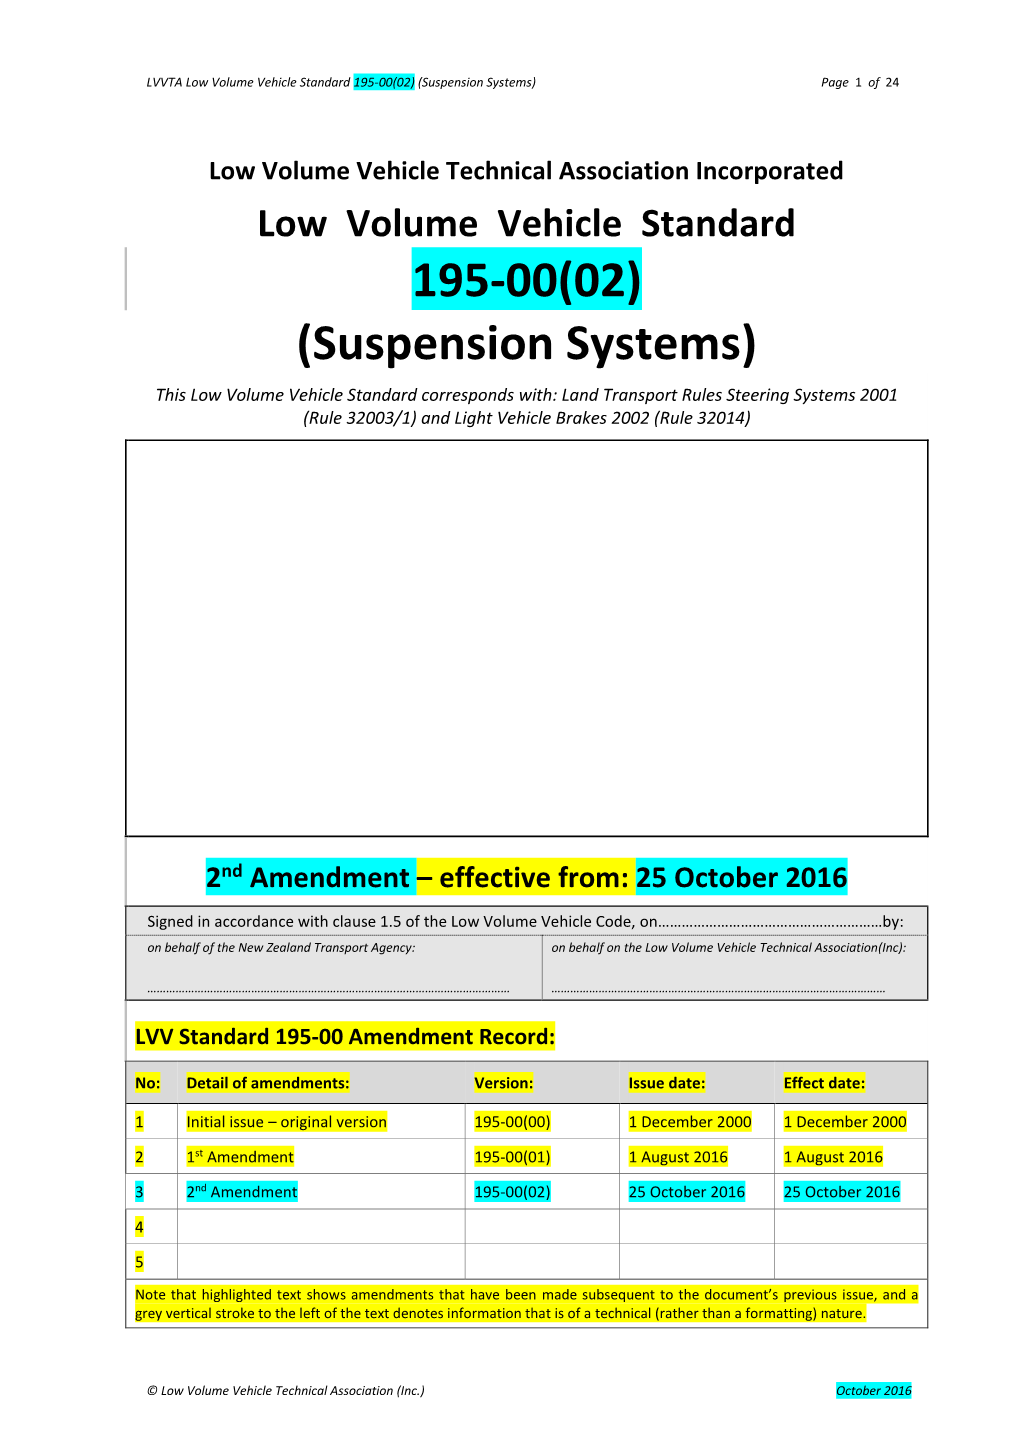 LVV Standard 195-00 – Suspension Systems